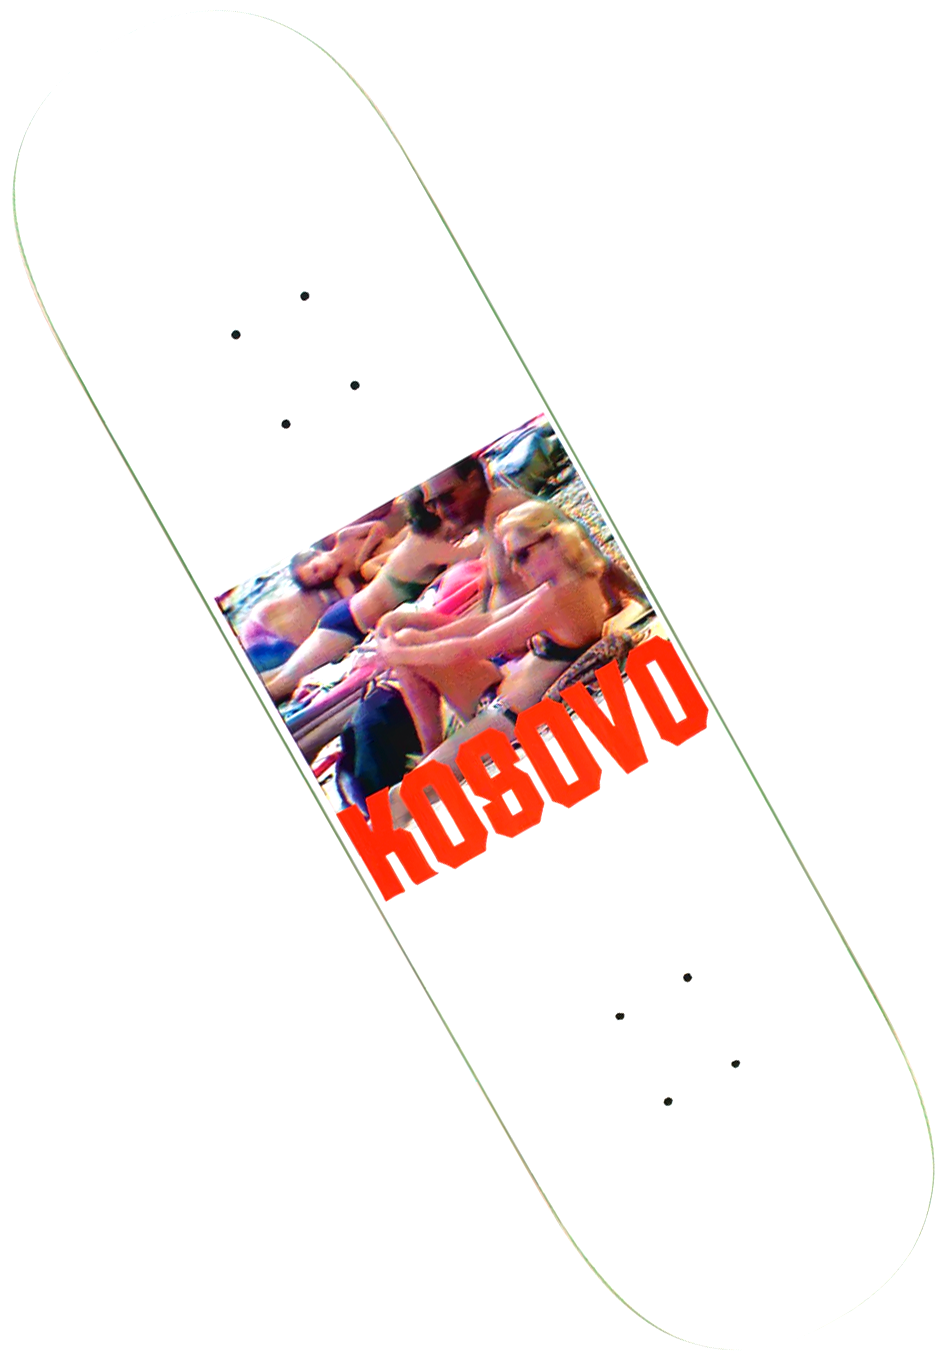 Hockey Skateboards Kosovo Deck White